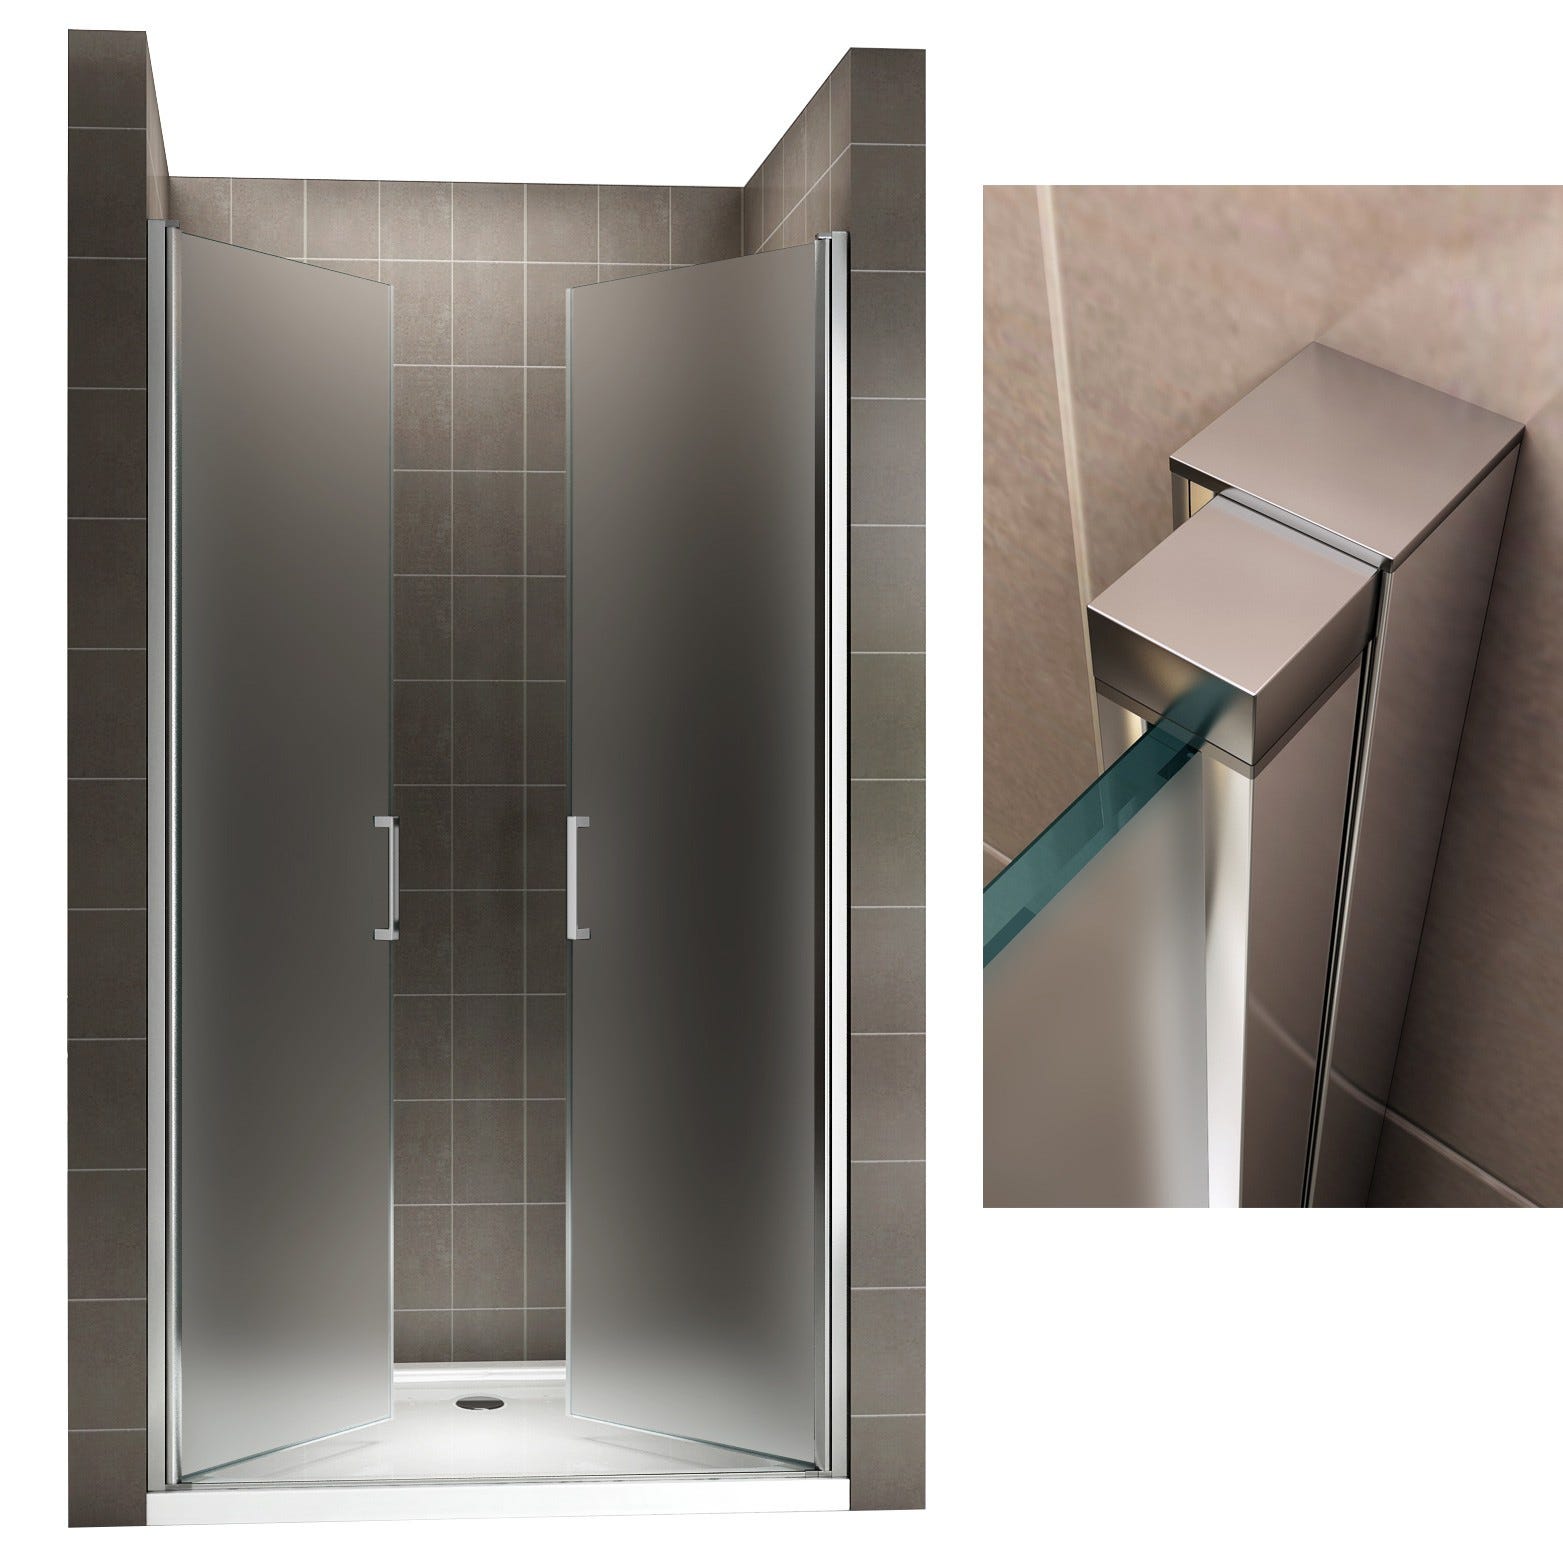 KAYA Porte de douche H 180 largeur réglable 83 à 86 cm verre opaque 3